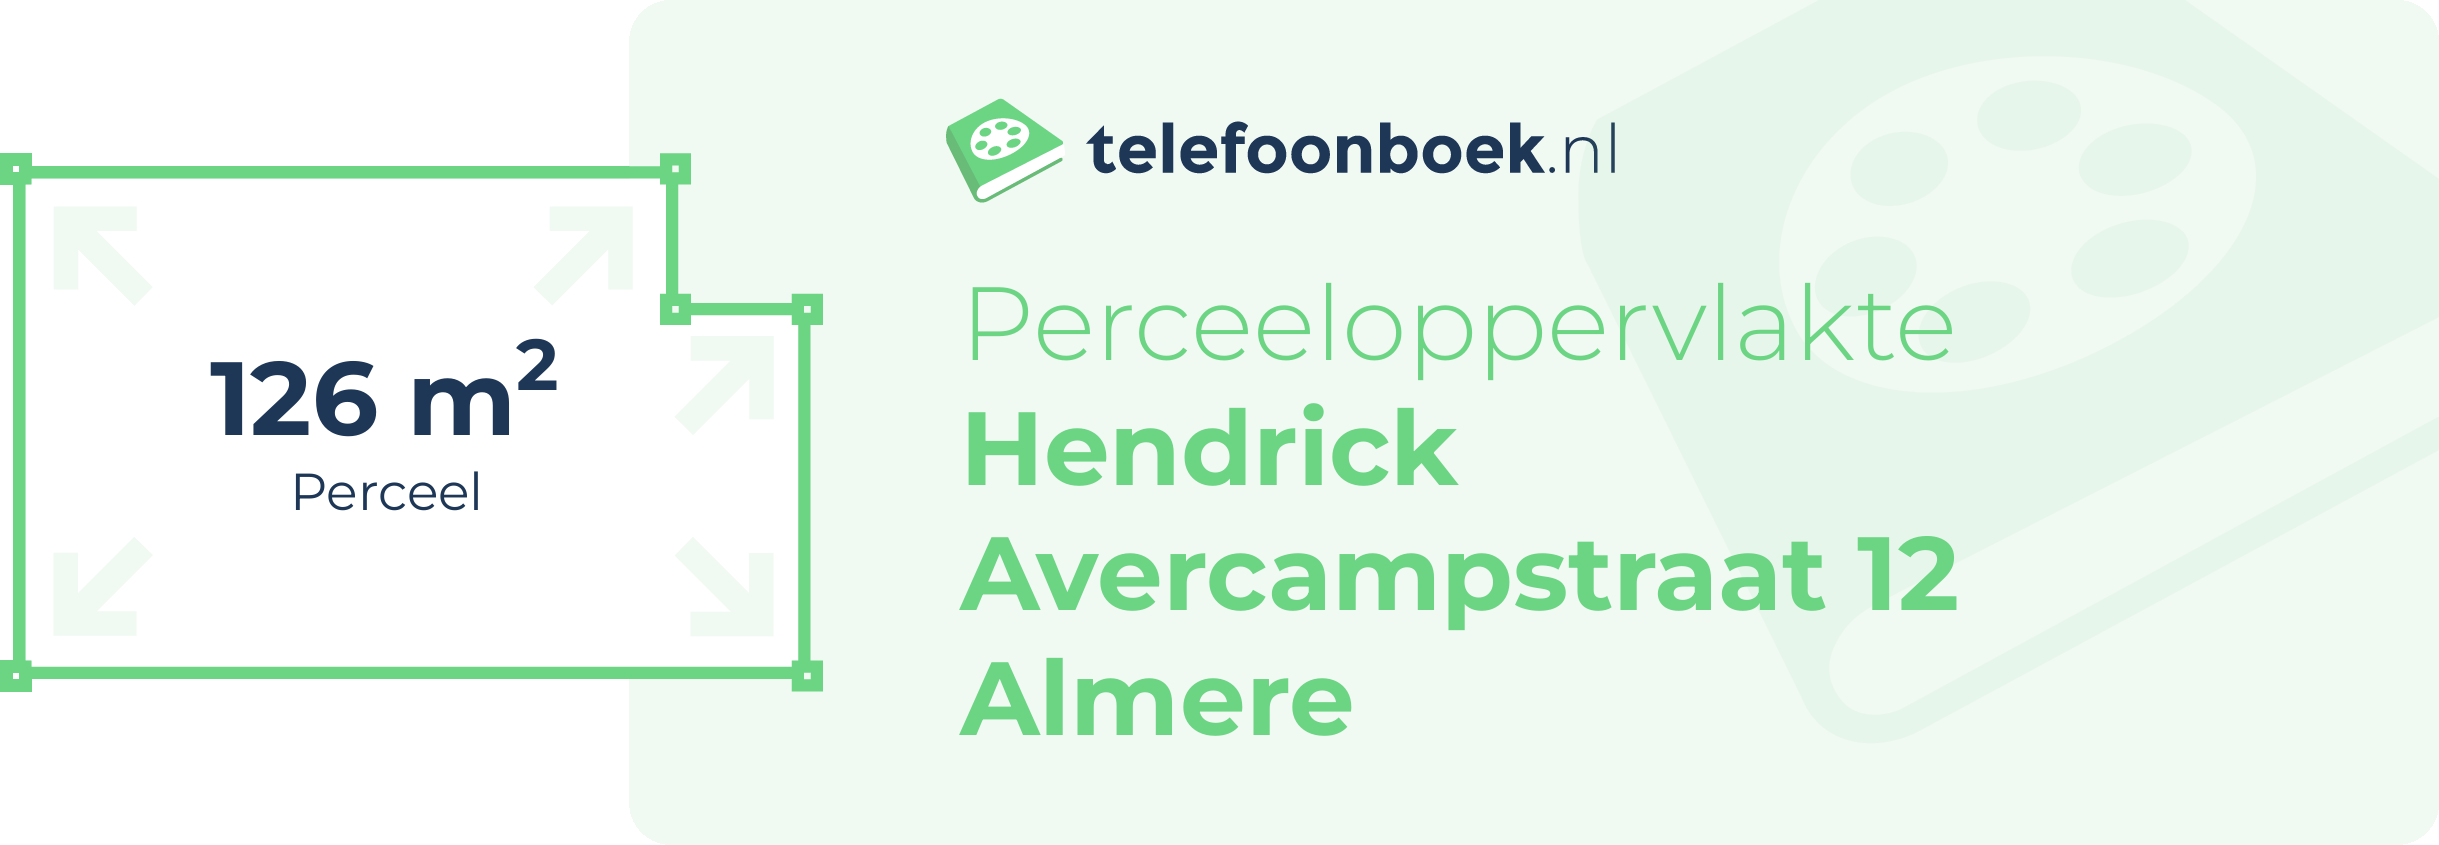 Perceeloppervlakte Hendrick Avercampstraat 12 Almere